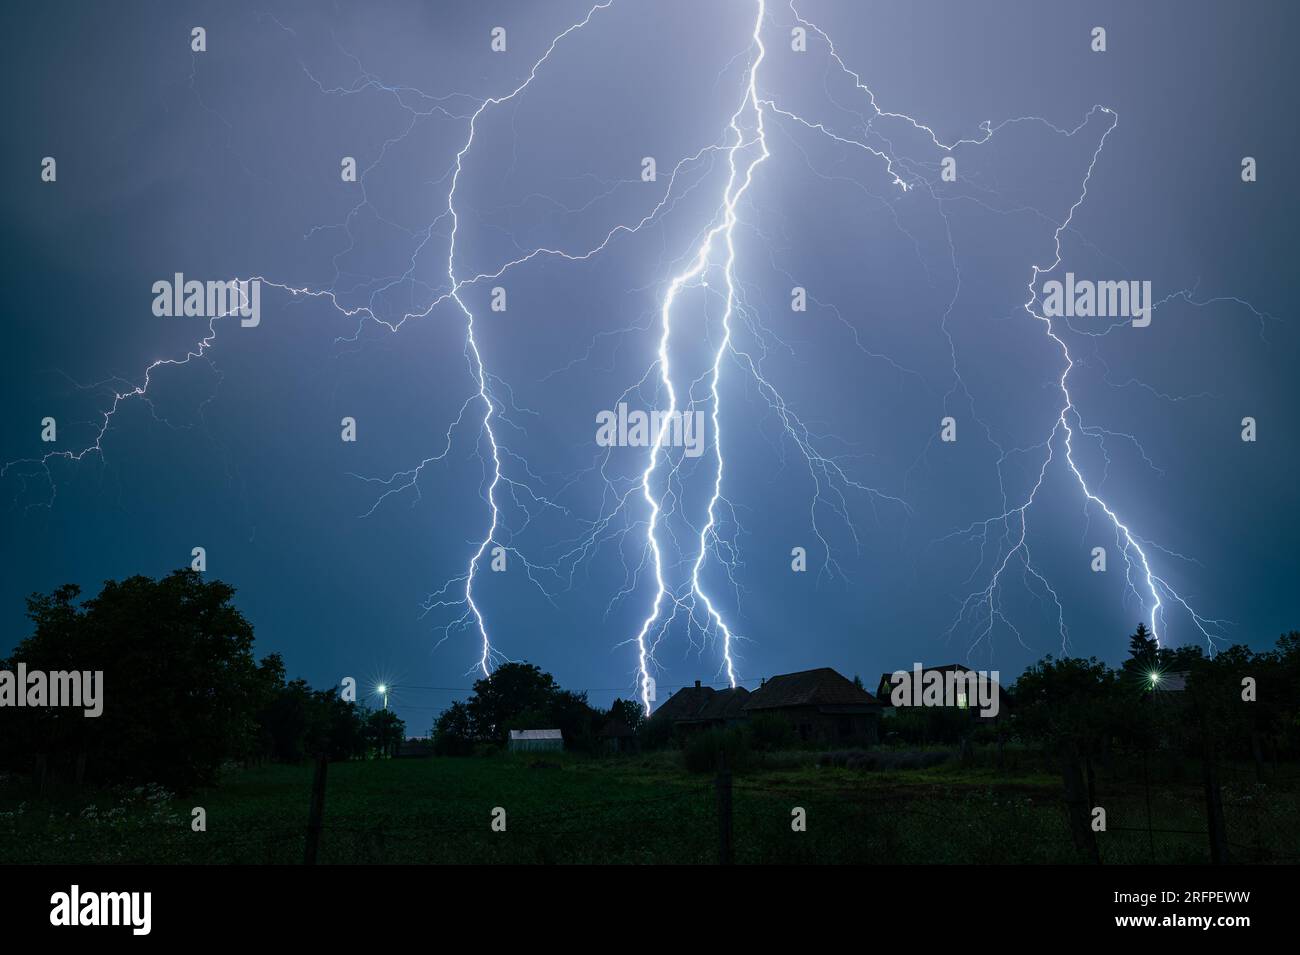 Mehrere verzweigte Blitze treffen in einer stürmischen Nacht auf die Erde. Stockfoto